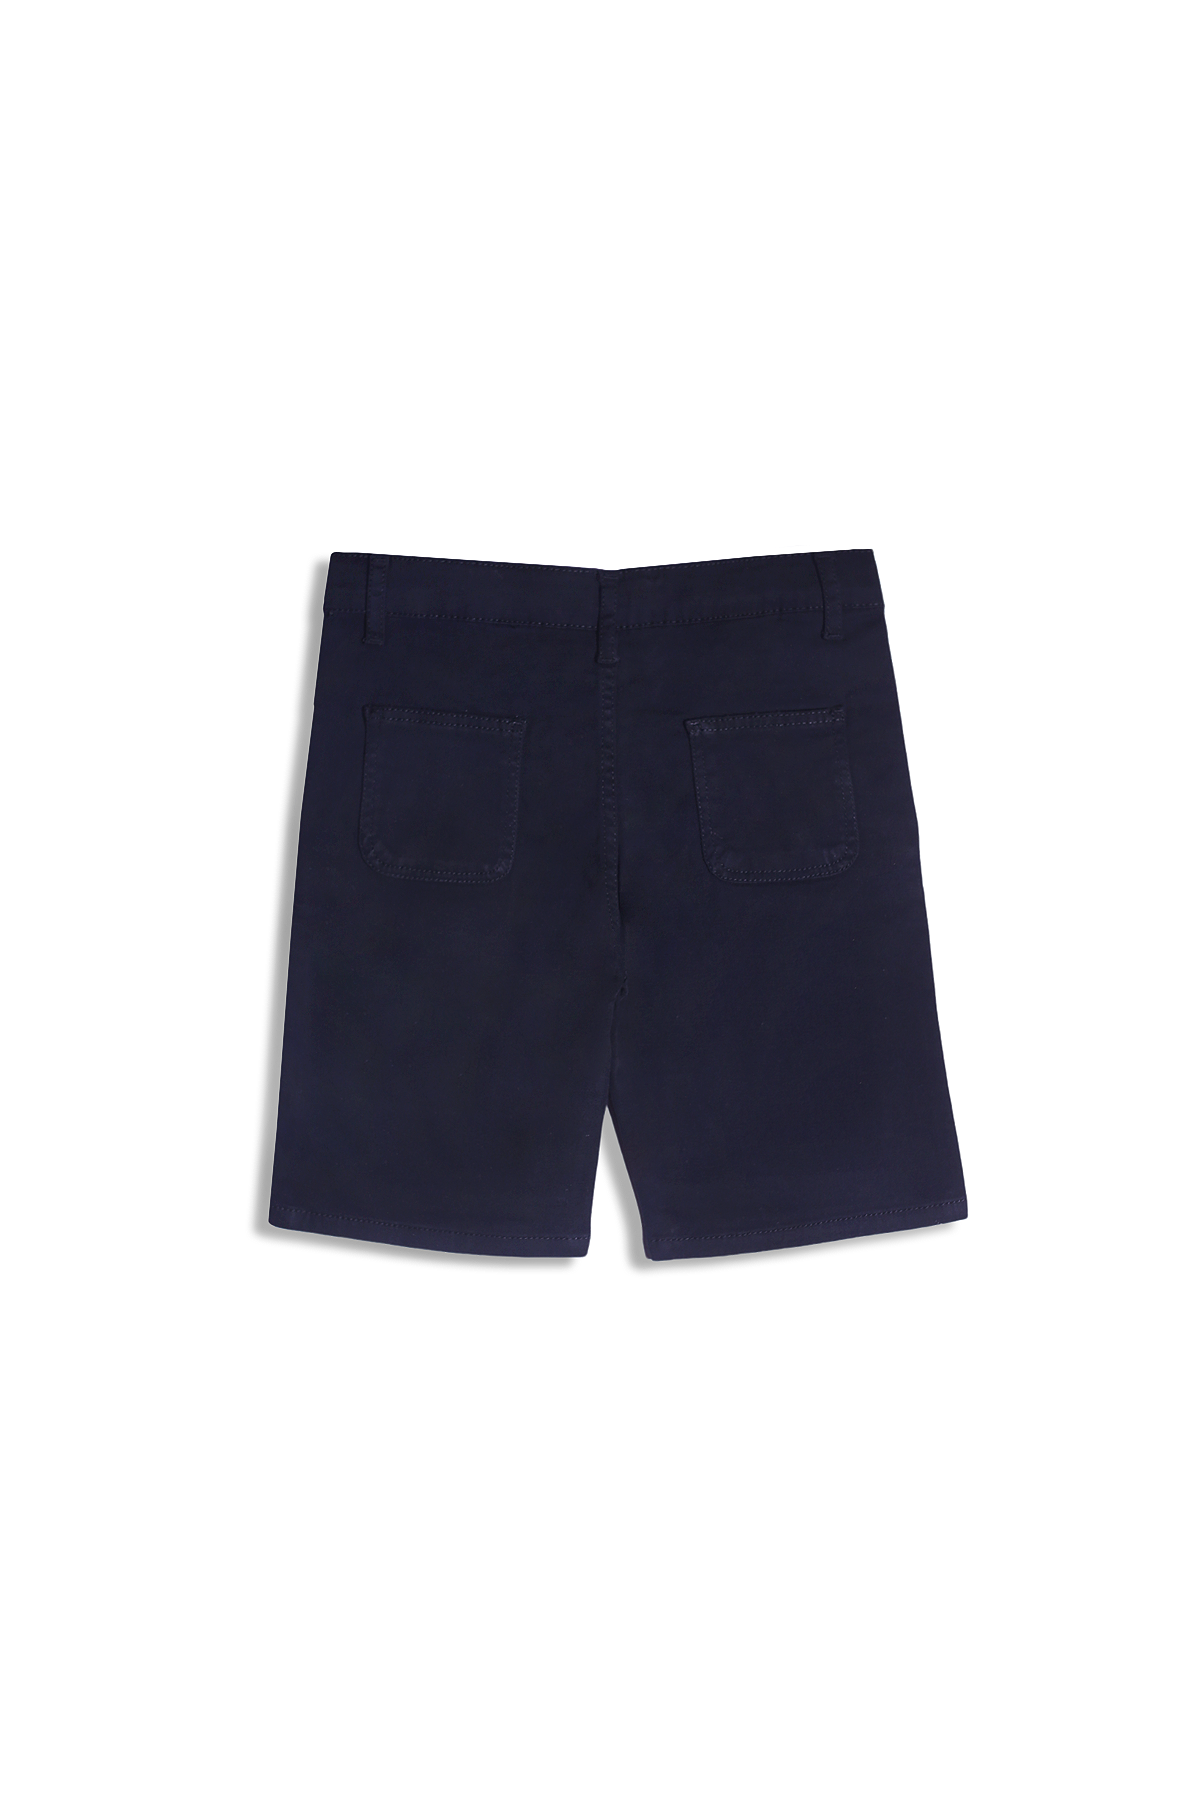 Shorts (BSH-454)